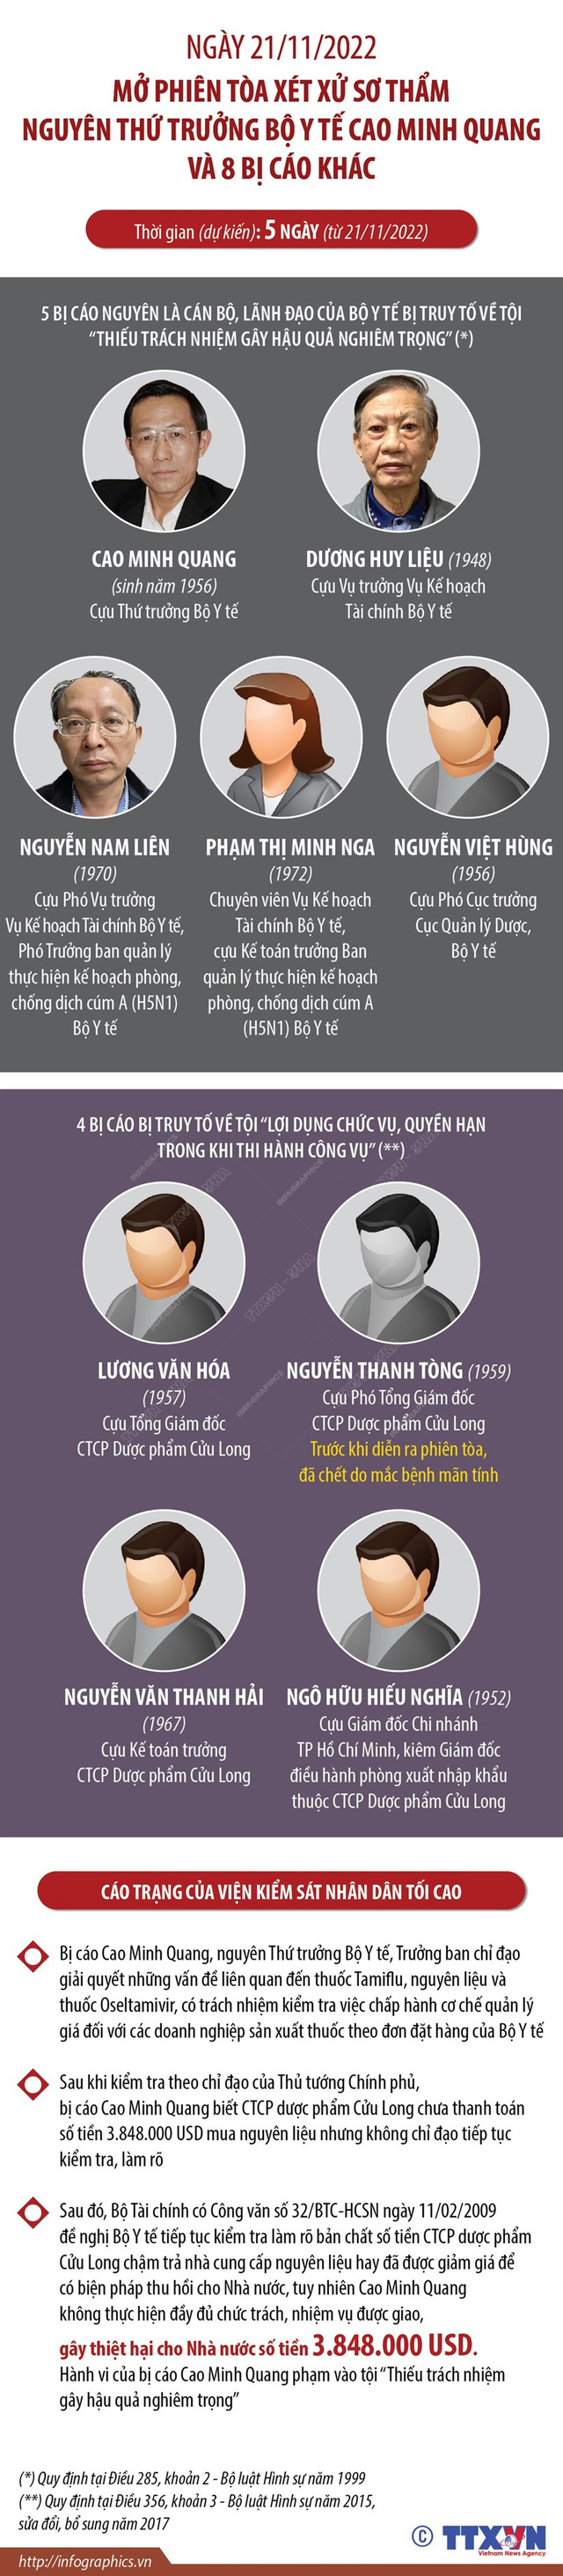 Ngày 21/11 mở phiên xét xử sơ thẩm nguyên Thứ trưởng Cao Minh Quang - Ảnh 1.